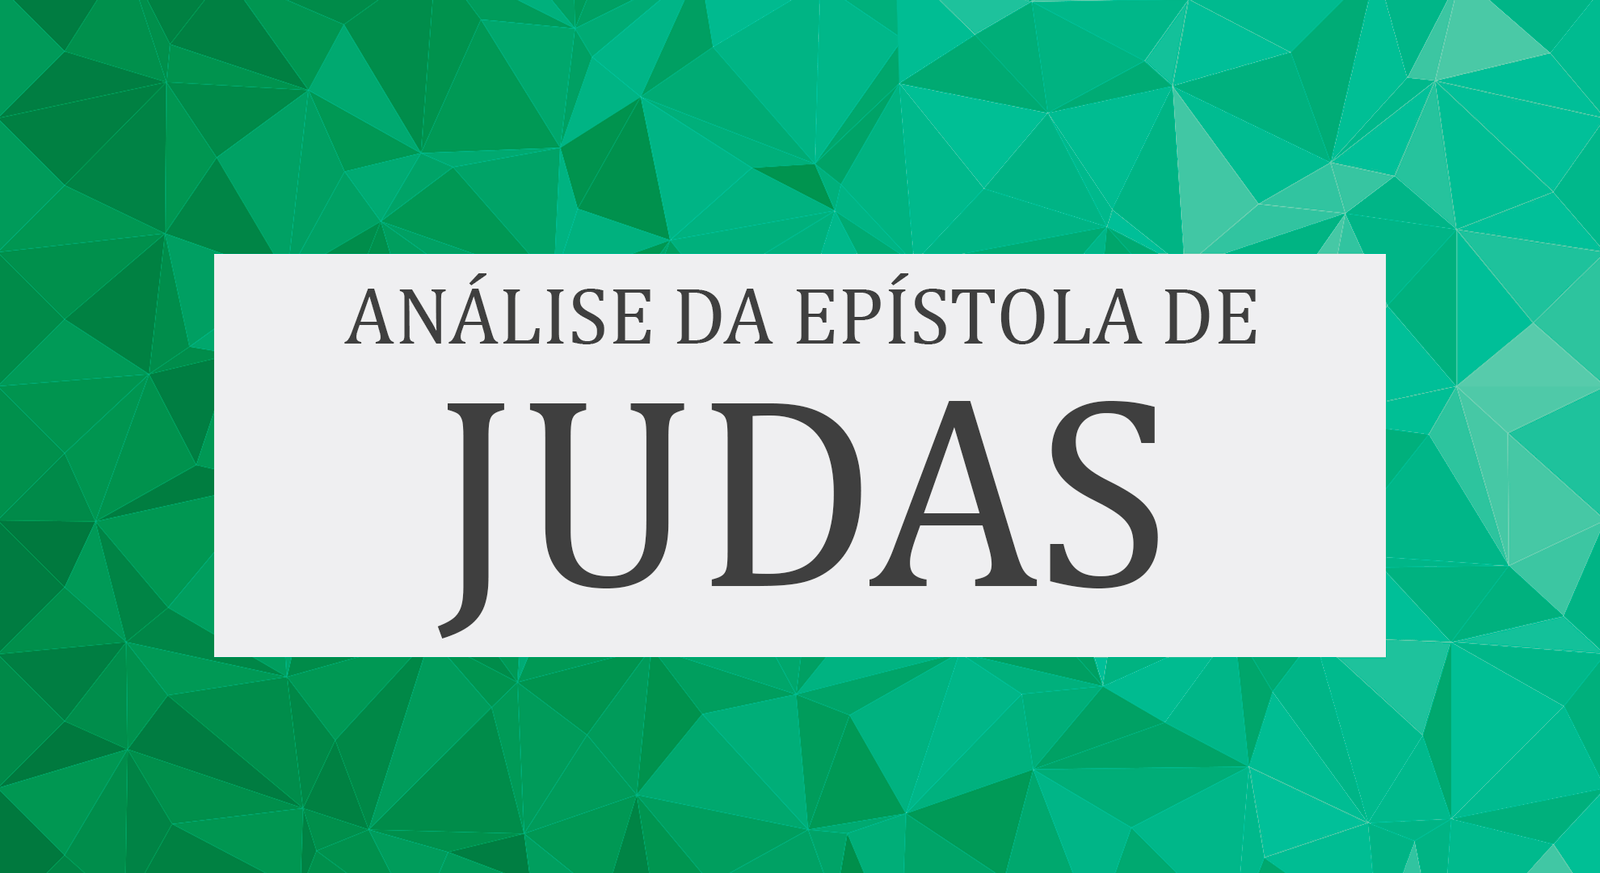 Espístola de Judas